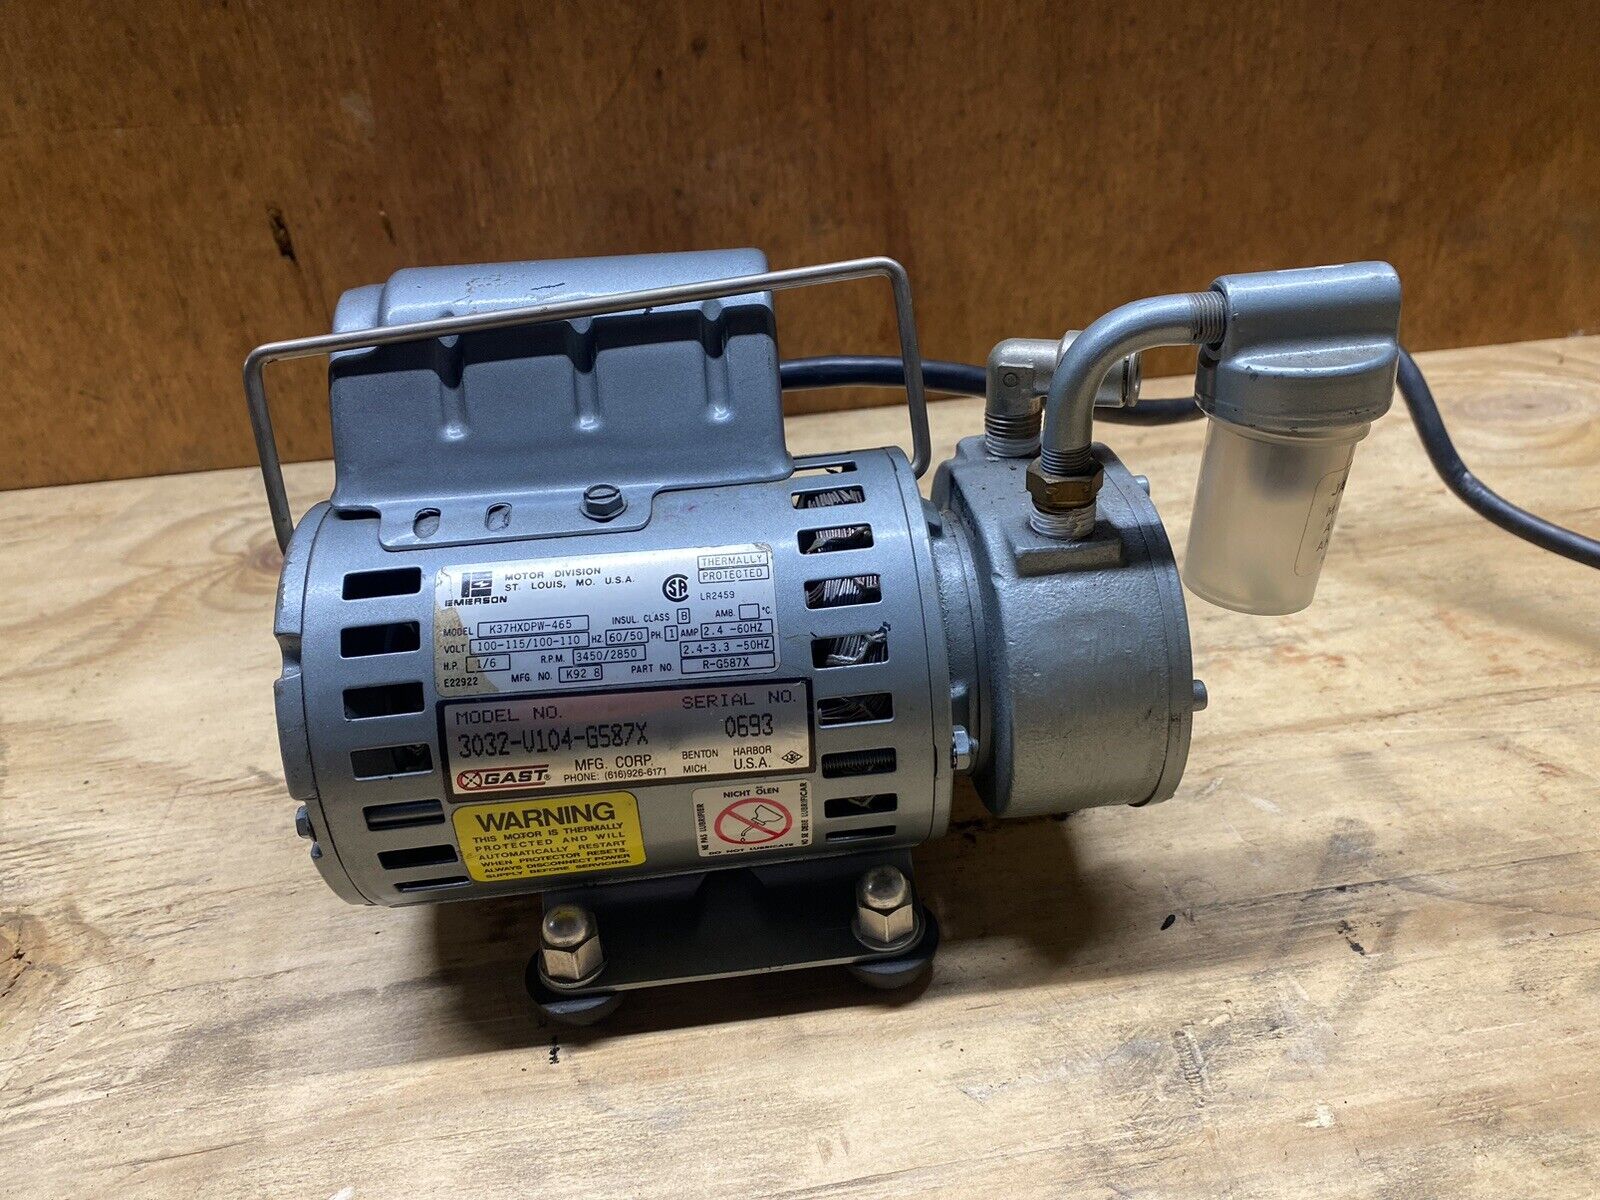 Gast Vacuum Pump 3032-V104-G587X Air Compressor